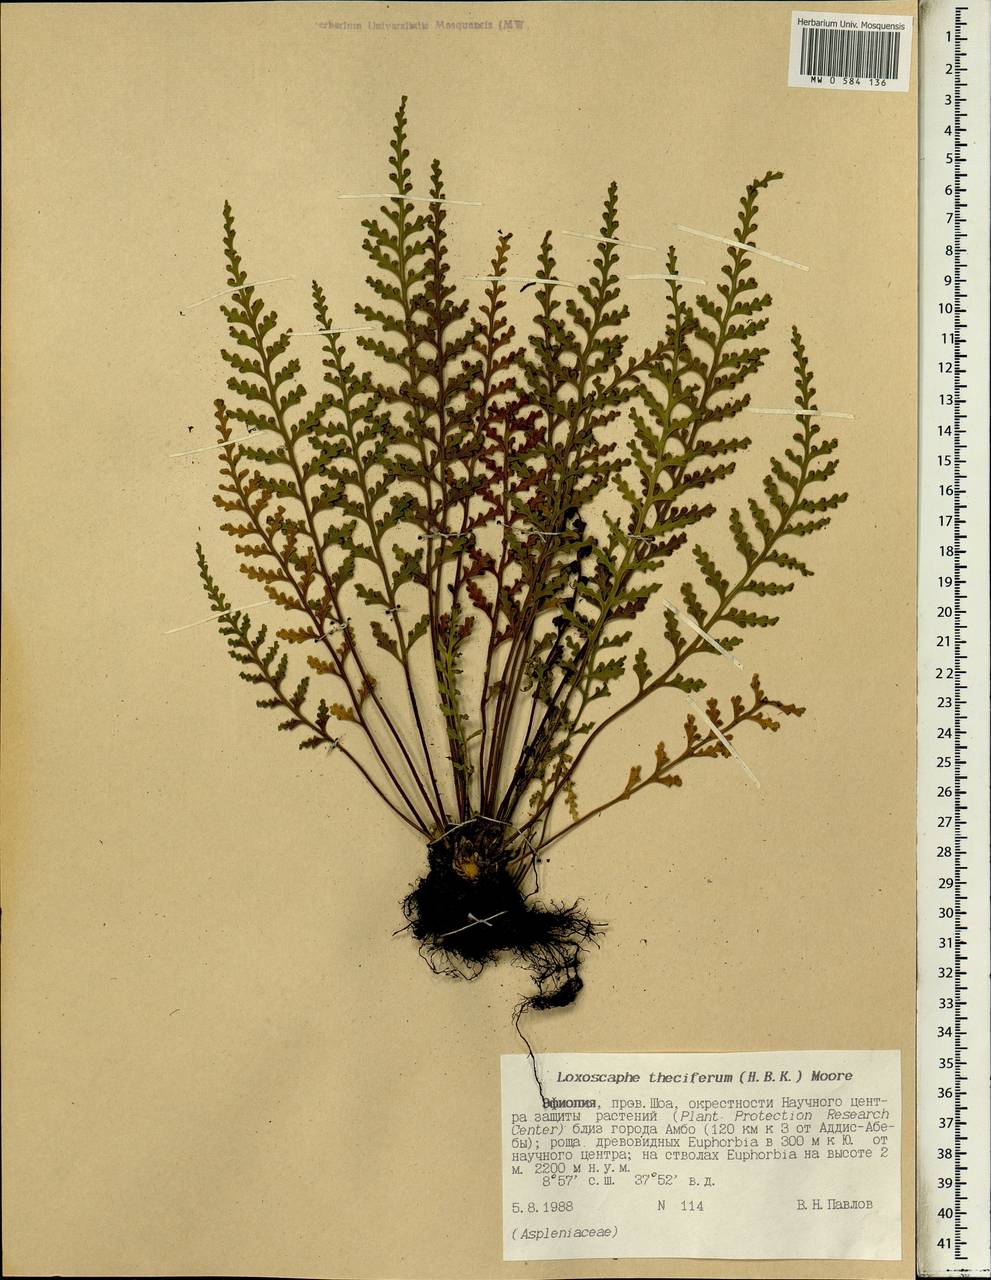 Asplenium theciferum (Kunth) Mett., Africa (AFR) (Ethiopia)